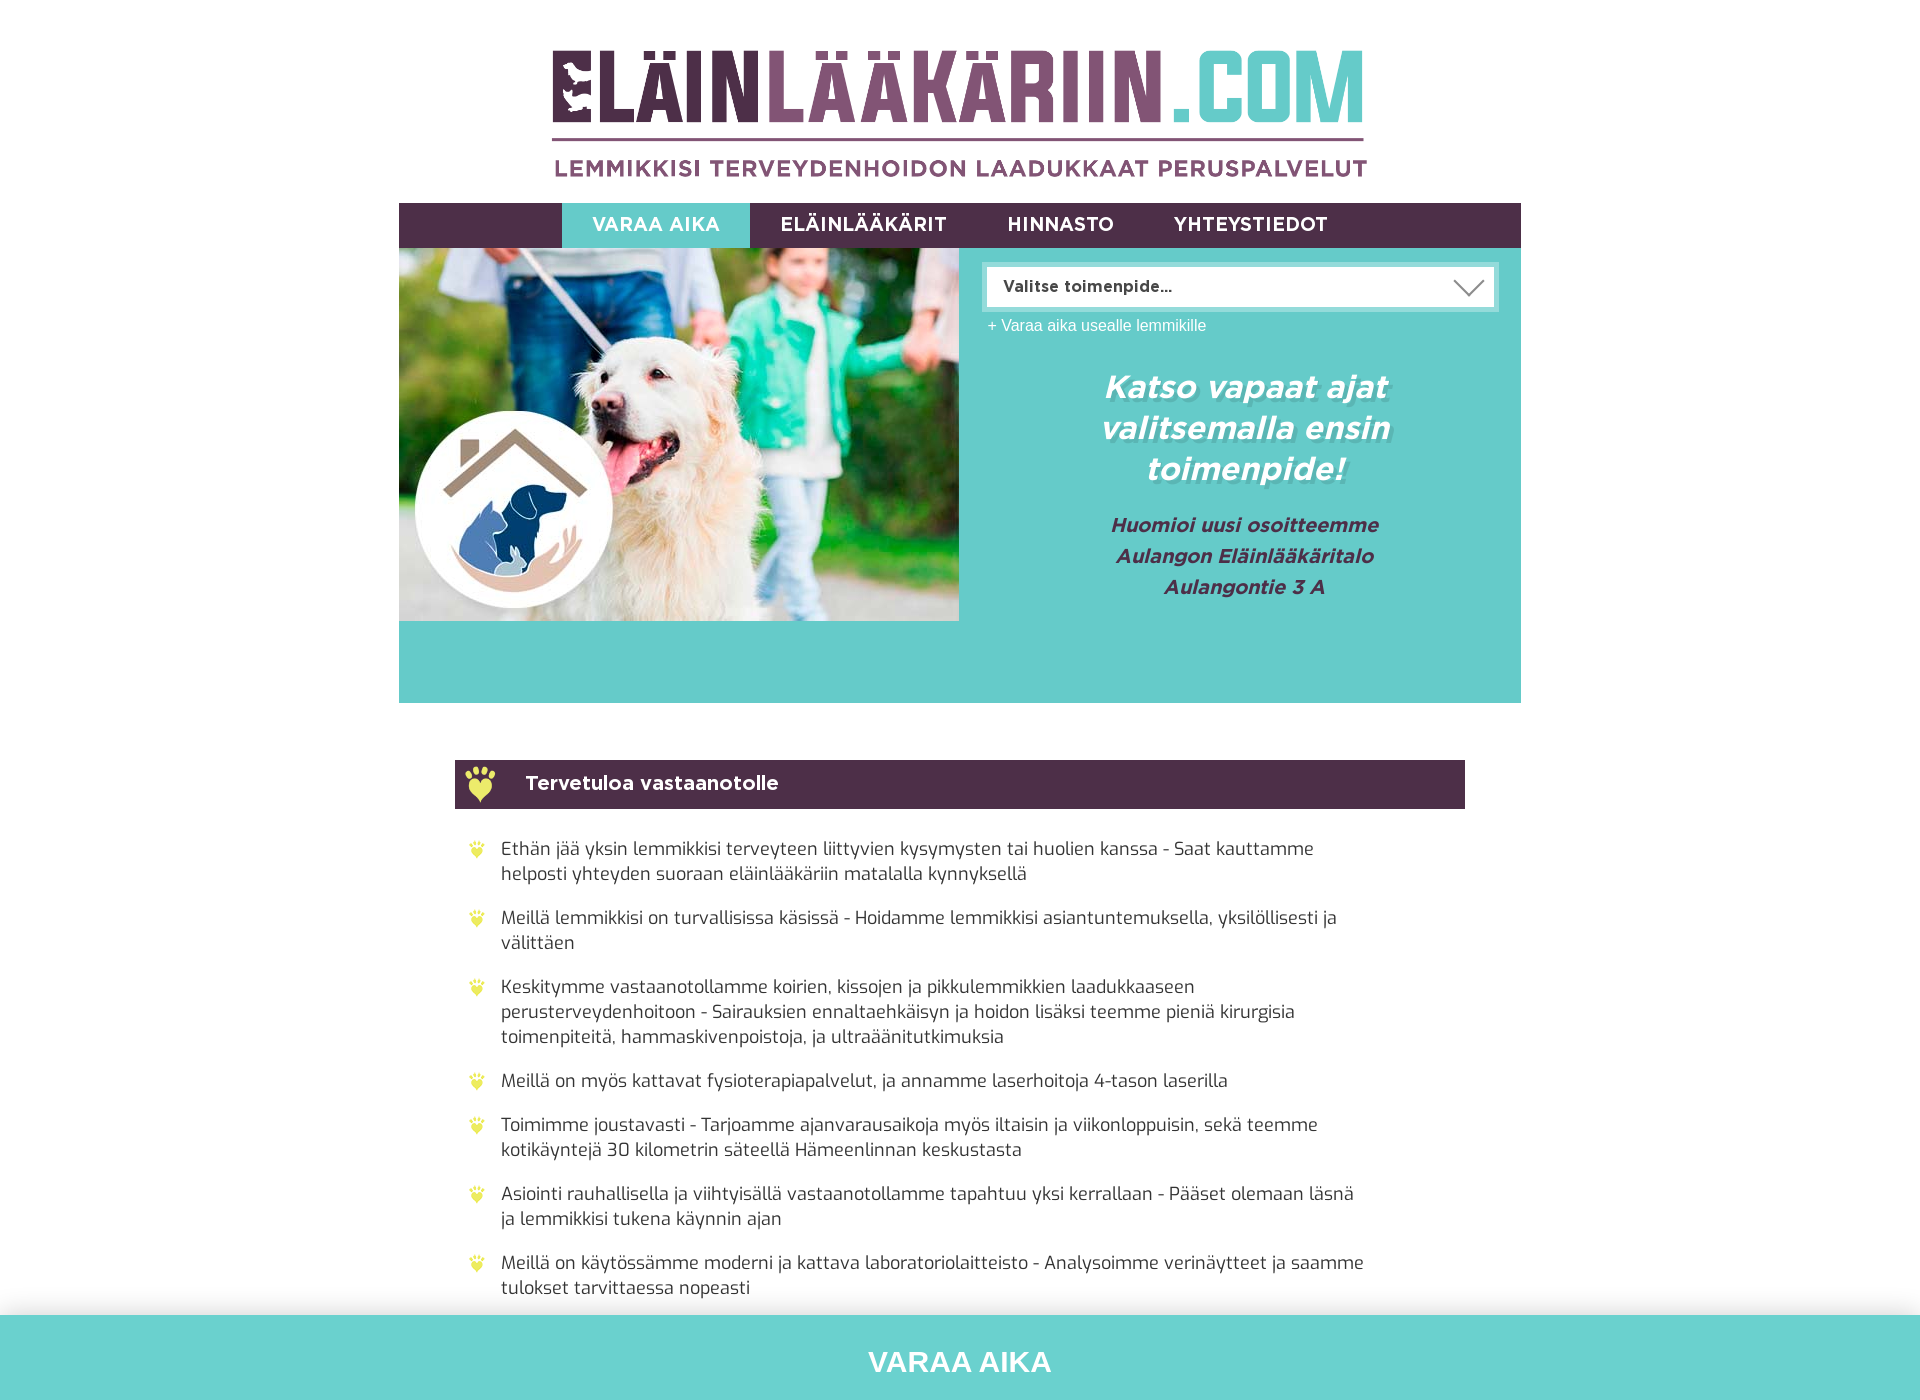 Screenshot for aulangoneläinlääkäritalo.fi